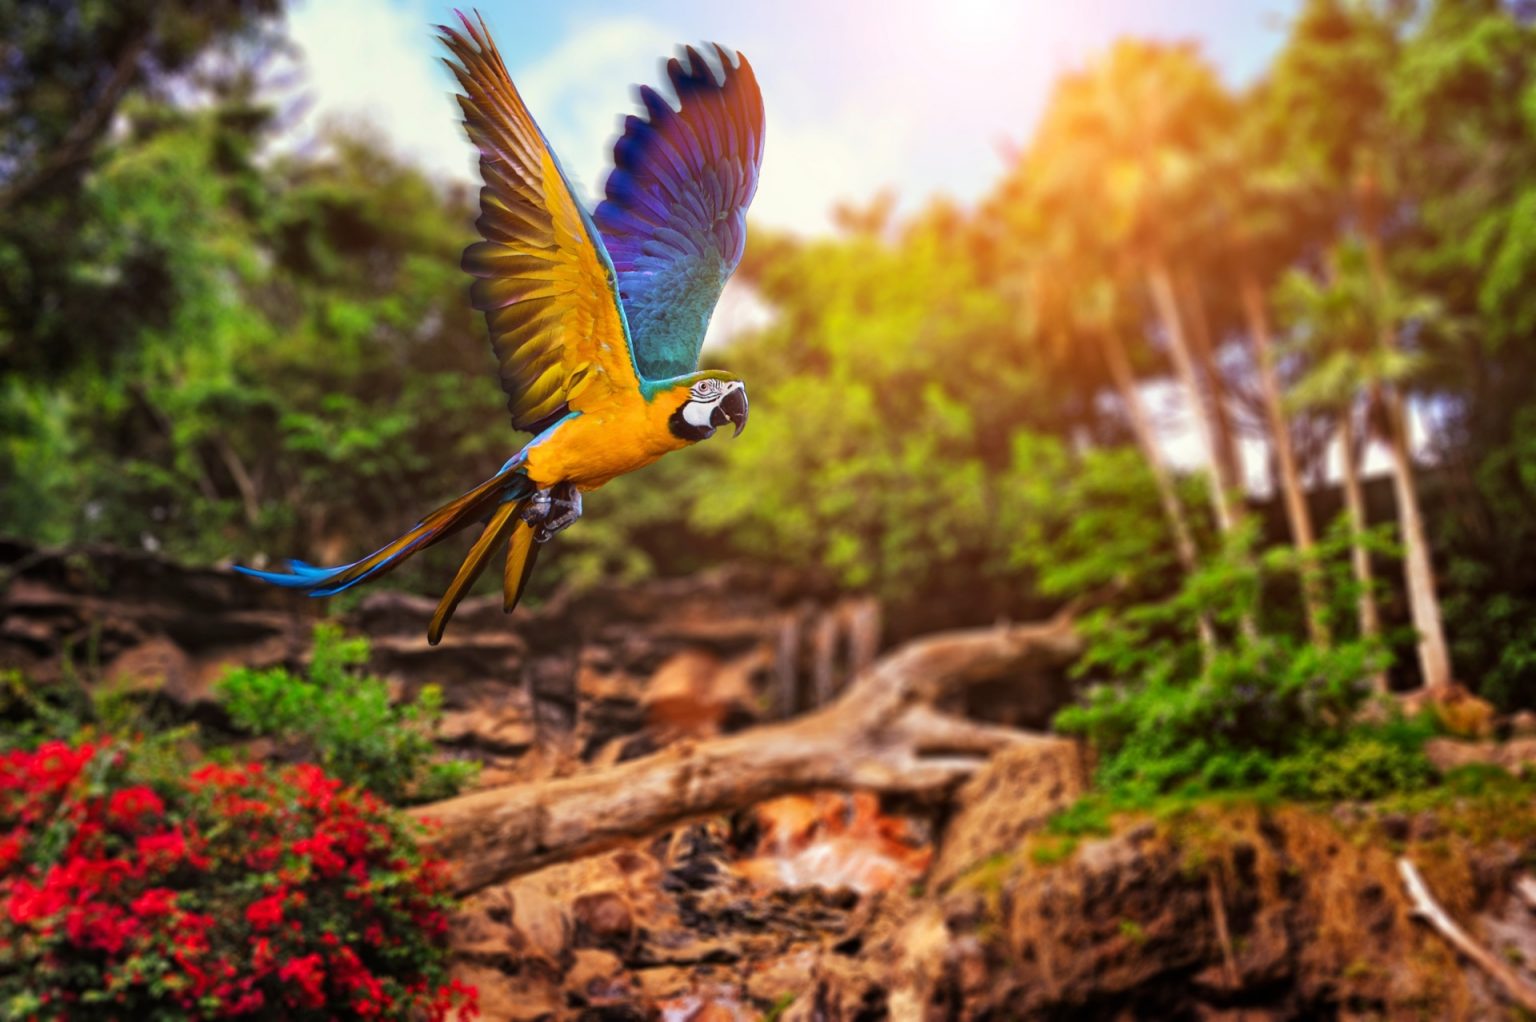 Tổng hợp hình ảnh chim Vẹt đẹp nhất - [Kích thước hình ảnh: 1536x1022 px]